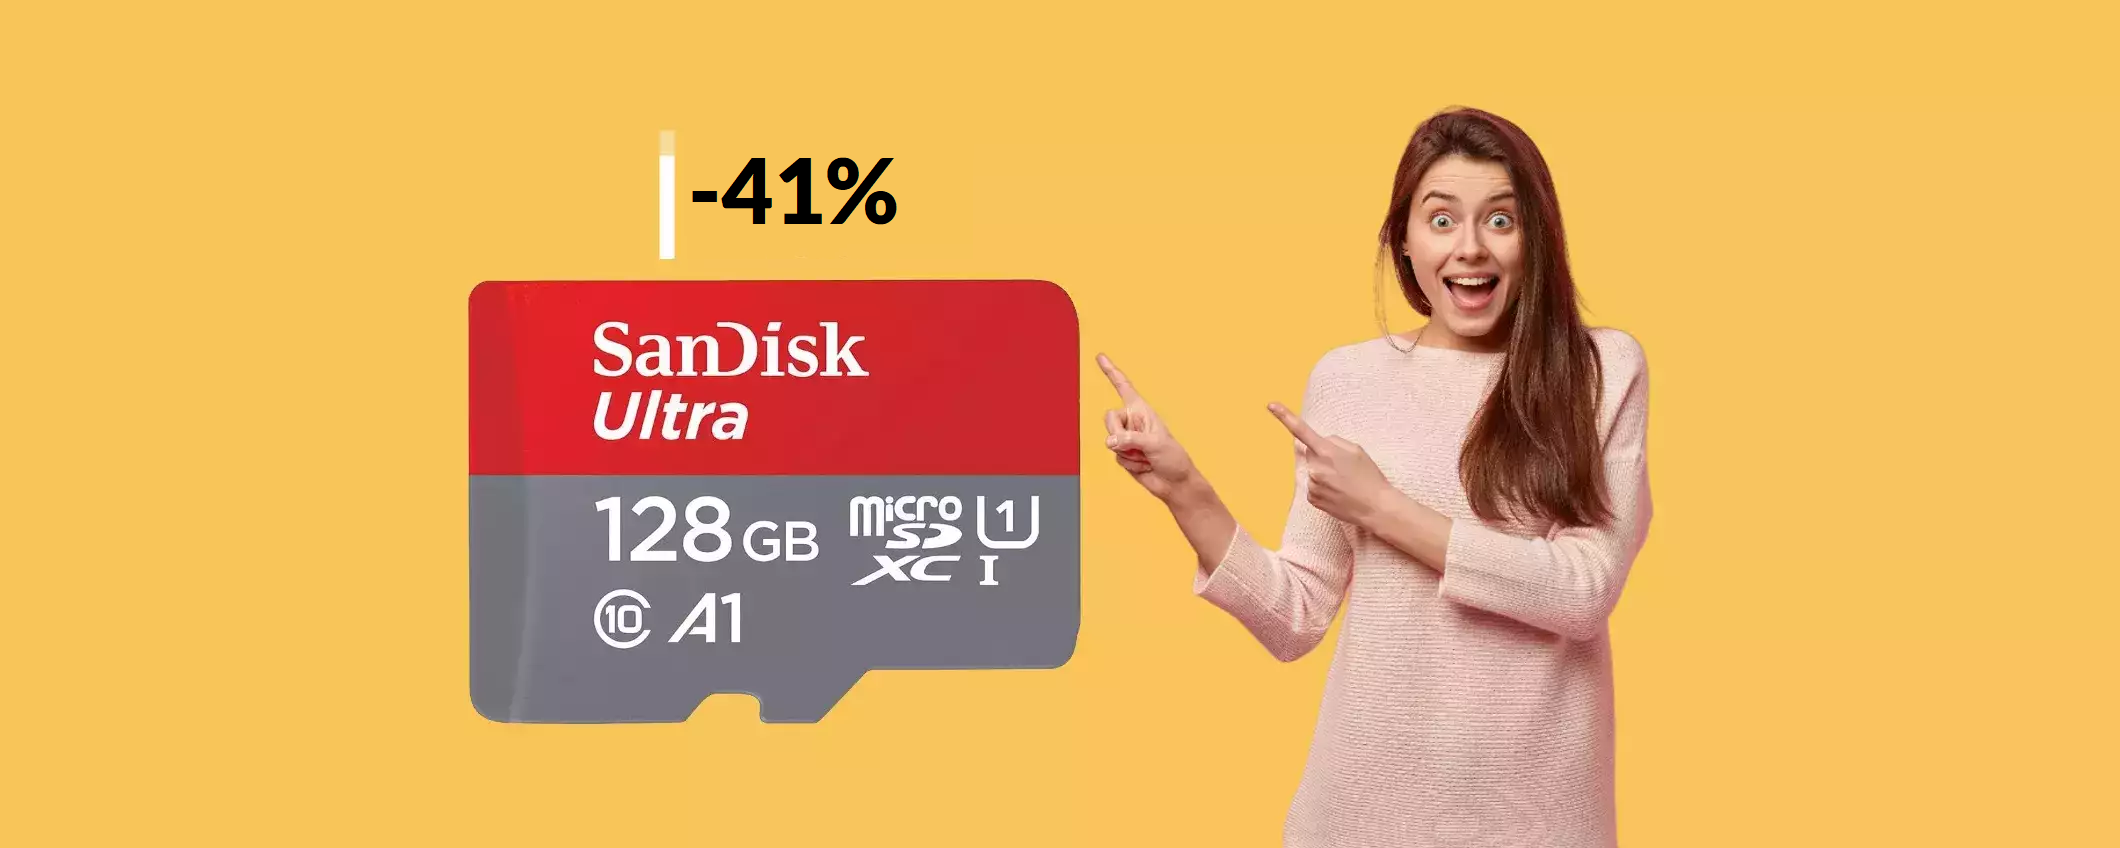 MicroSD SanDisk 128GB: oggi costa davvero un NIENTE (17€)